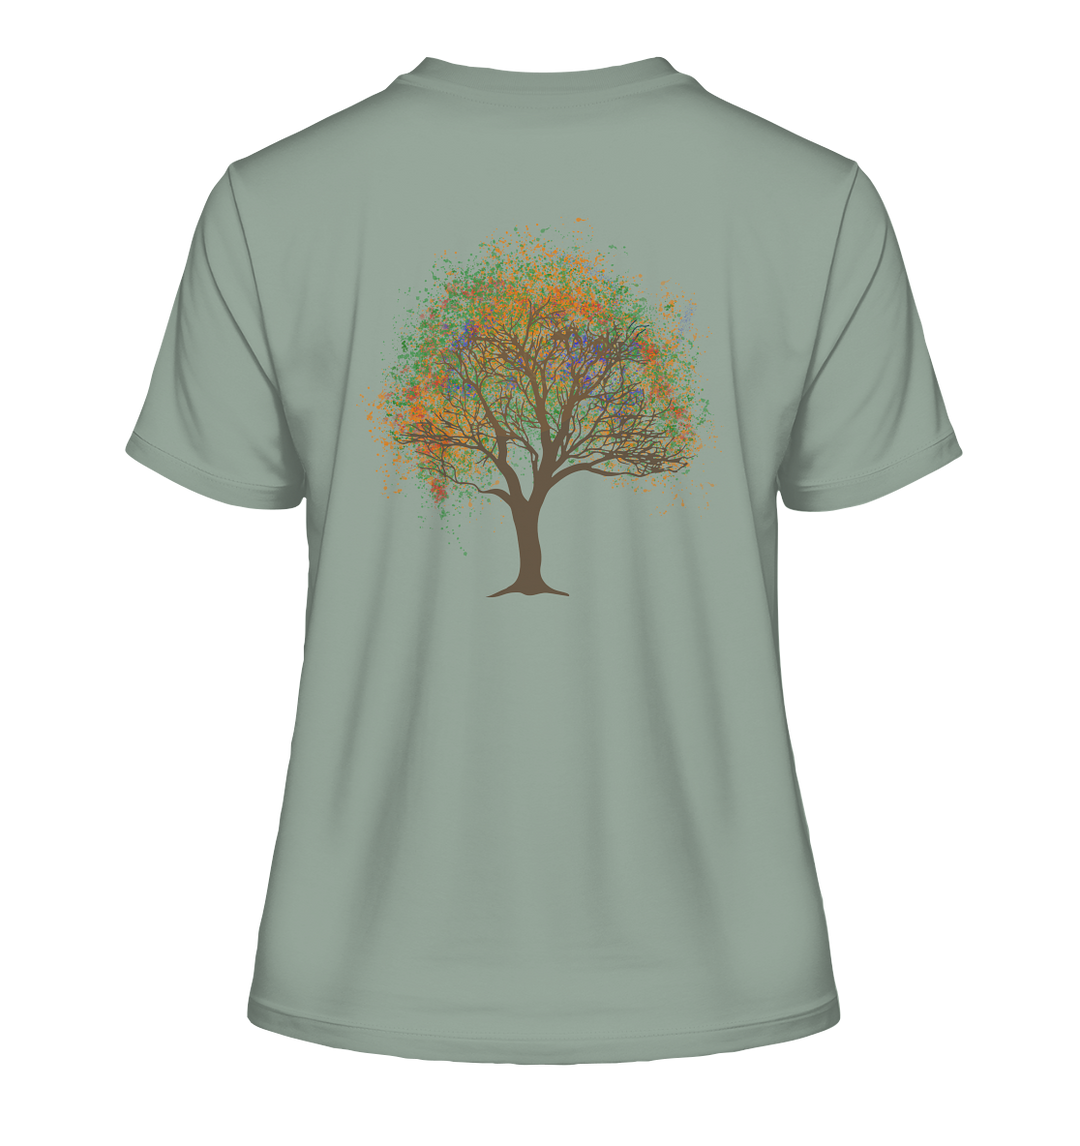 ZAUBERBAUM - Damen Bio T-Shirt (Backprint)